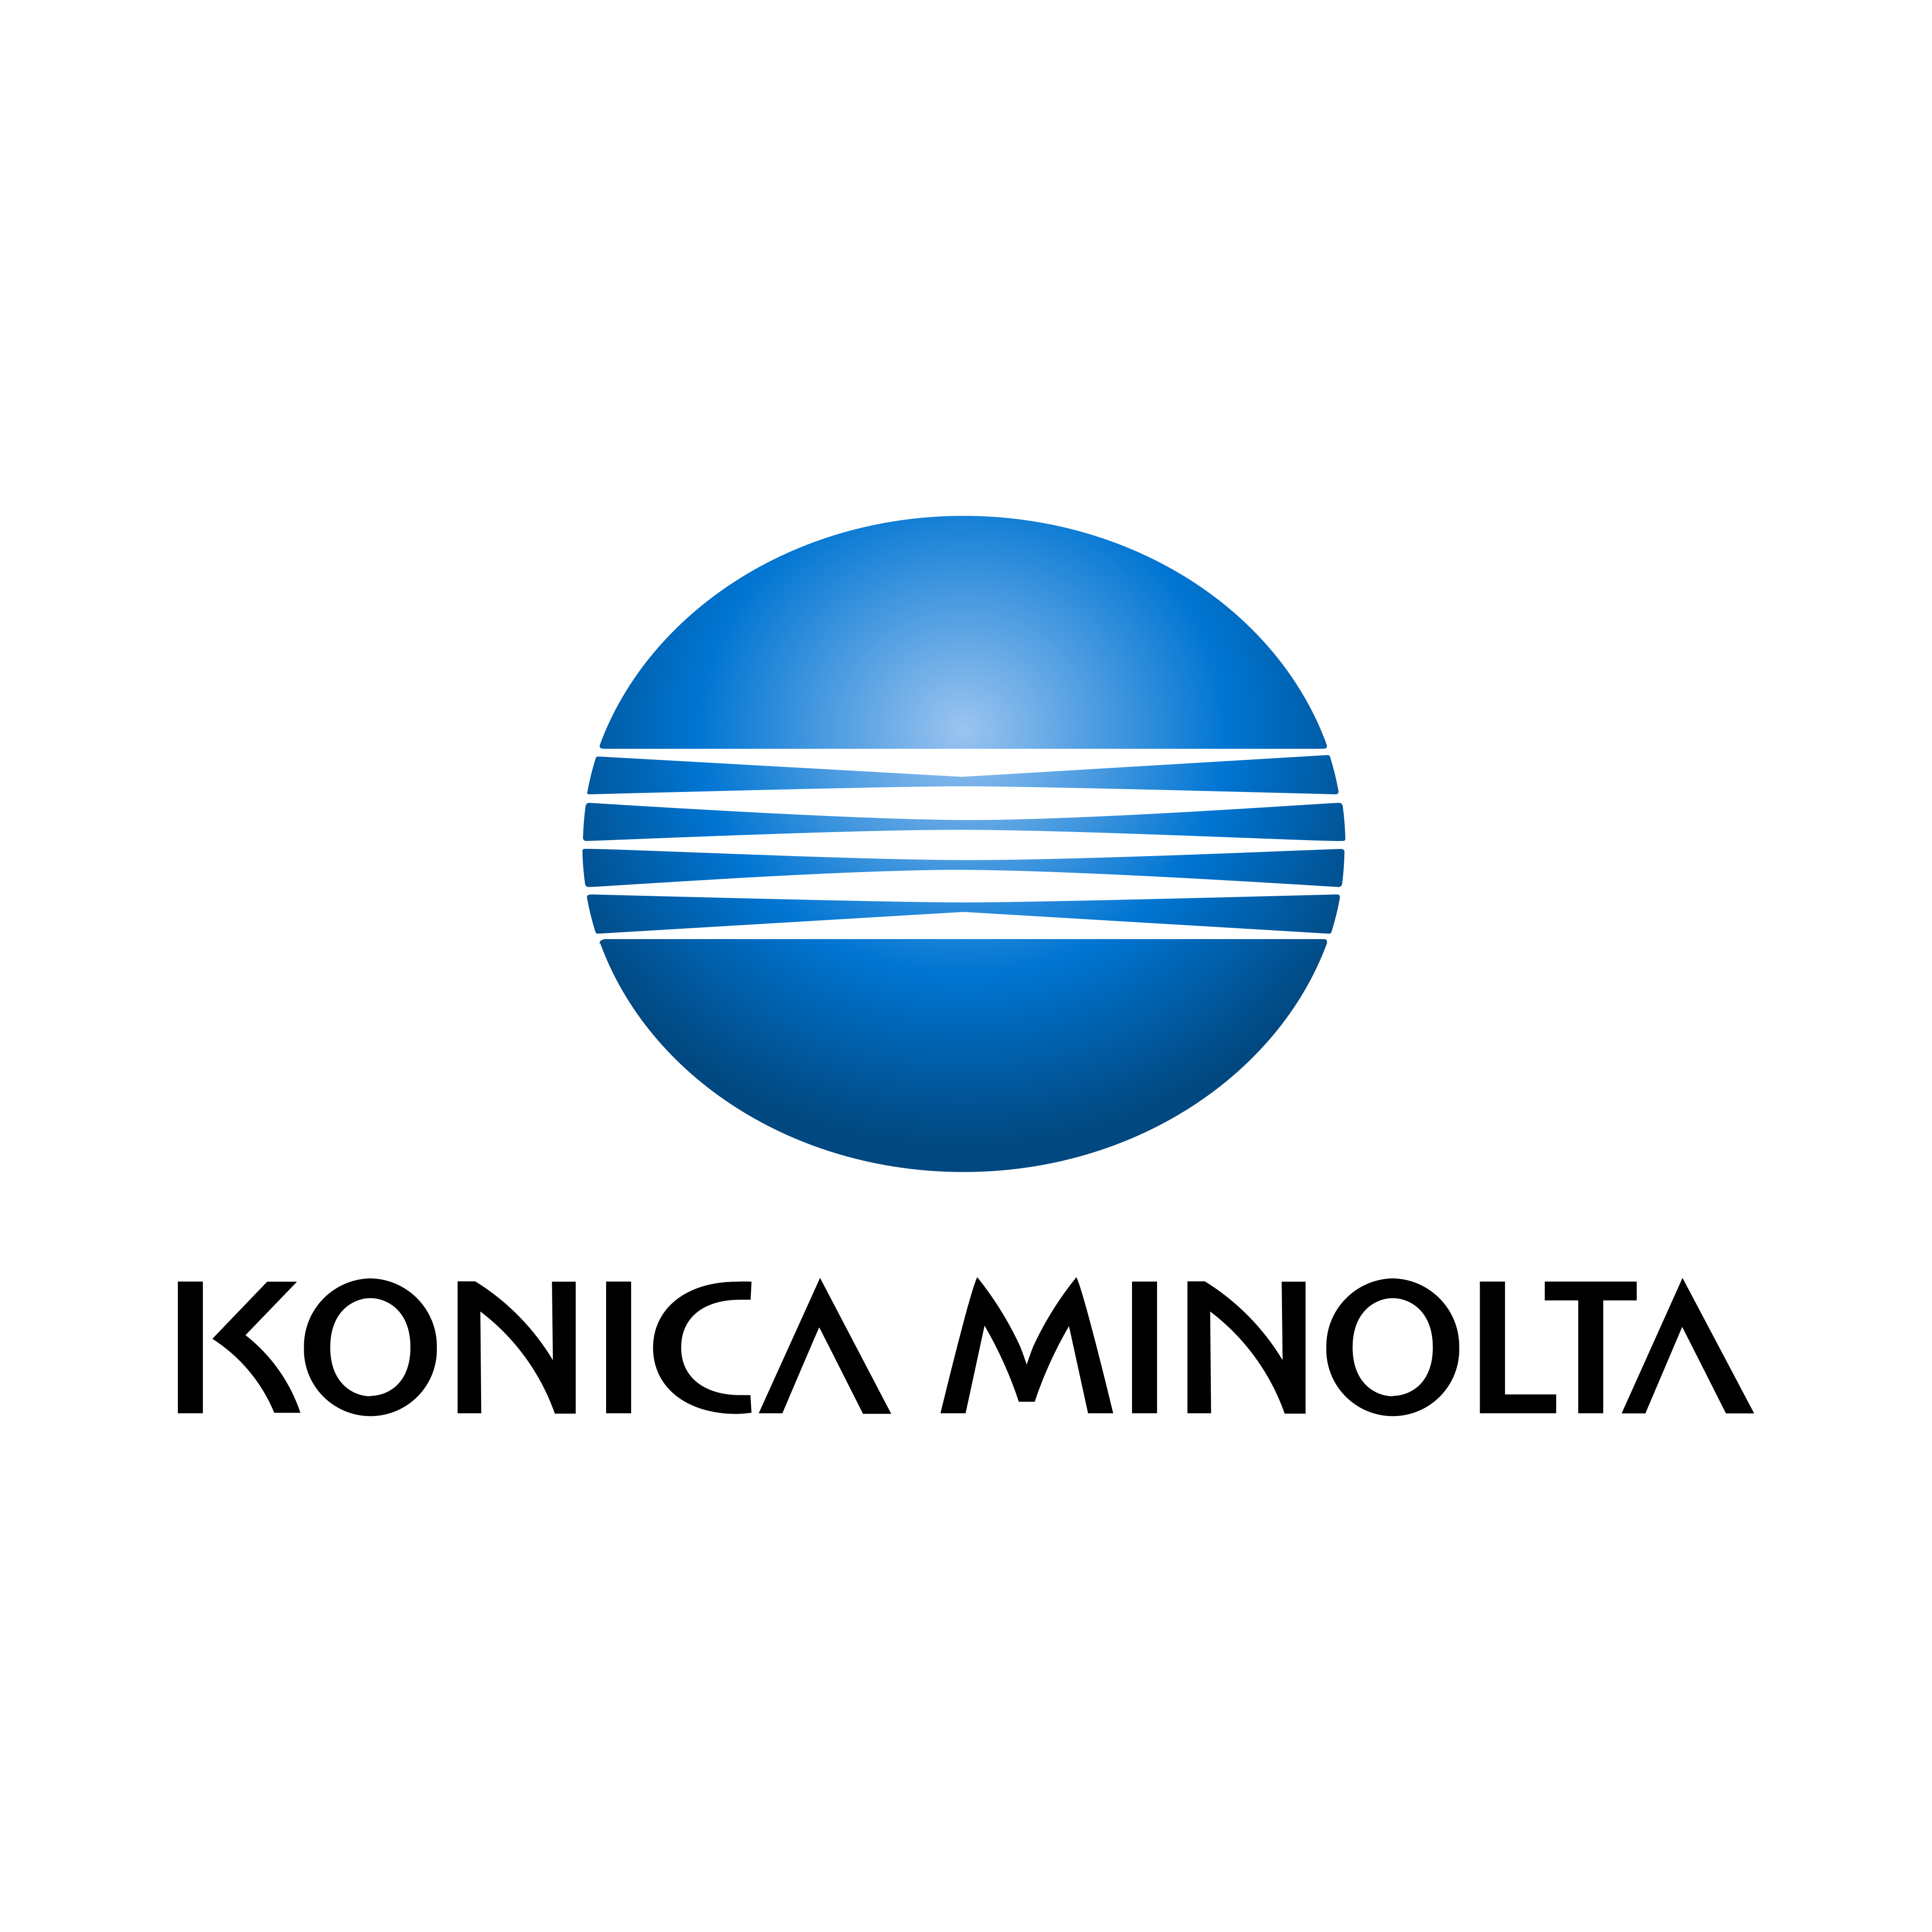 konicca minolta logo 0 - Konica Minolta Logo